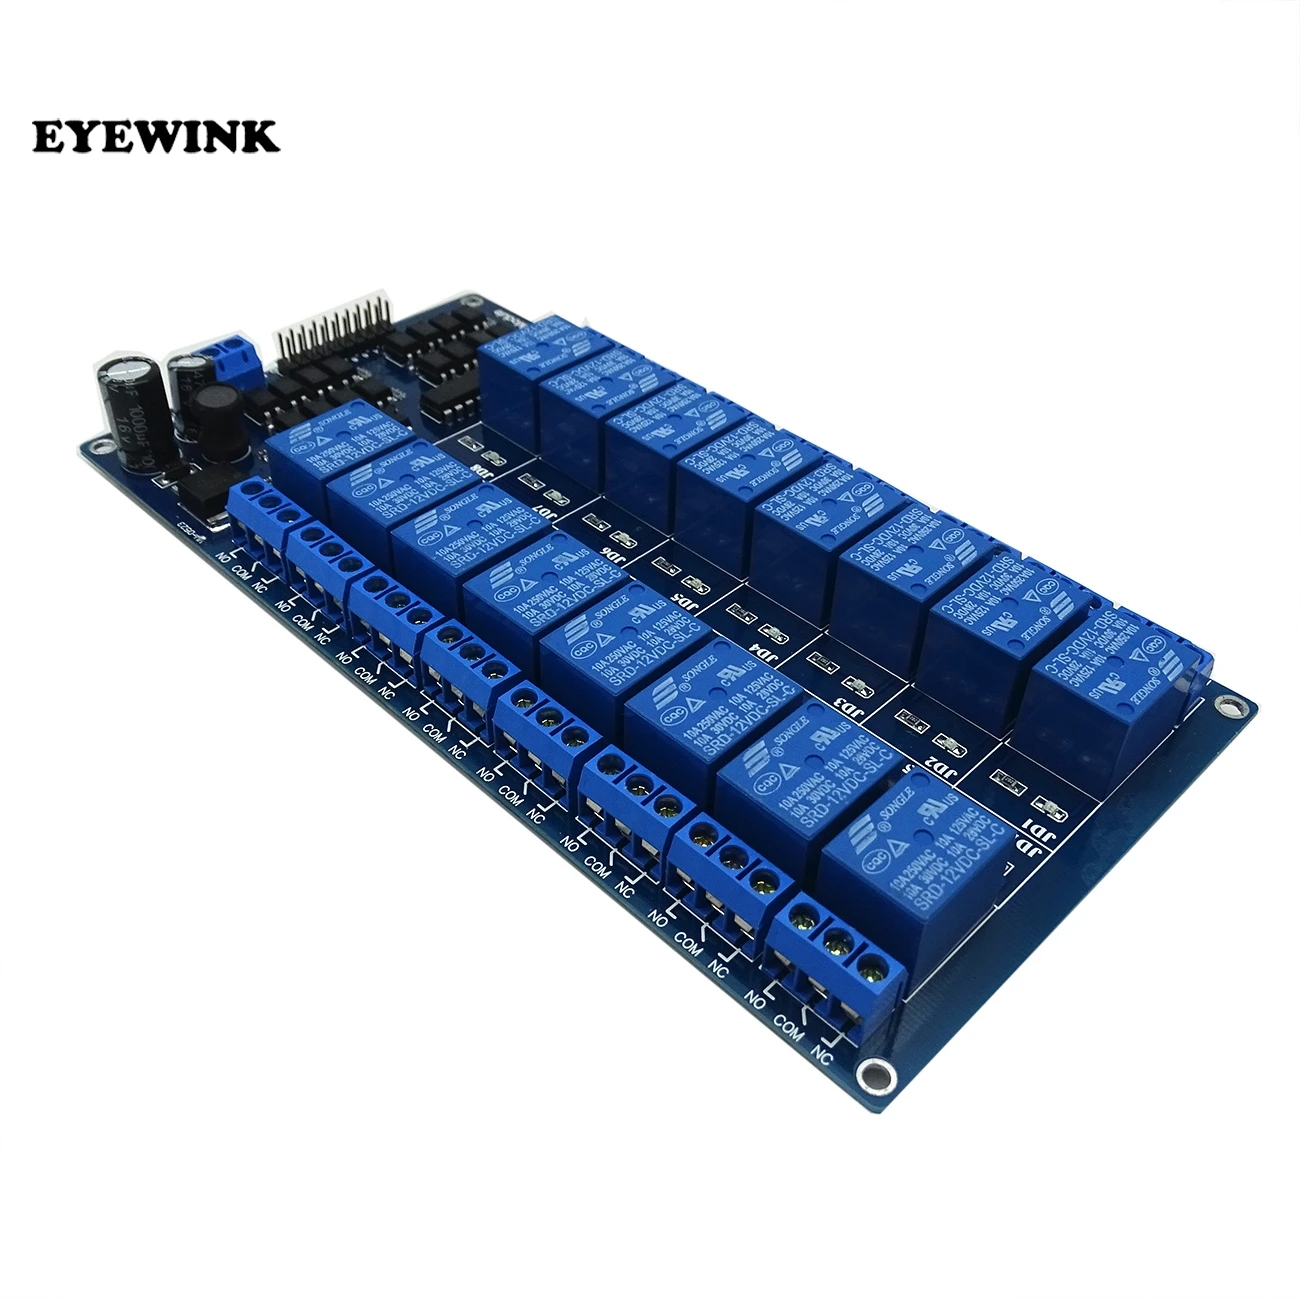 EYEWINK 5 В/12 в 16 канальный релейный модуль для arduino ARM PIC AVR DSP электронный релейный ремень оптрон изоляция